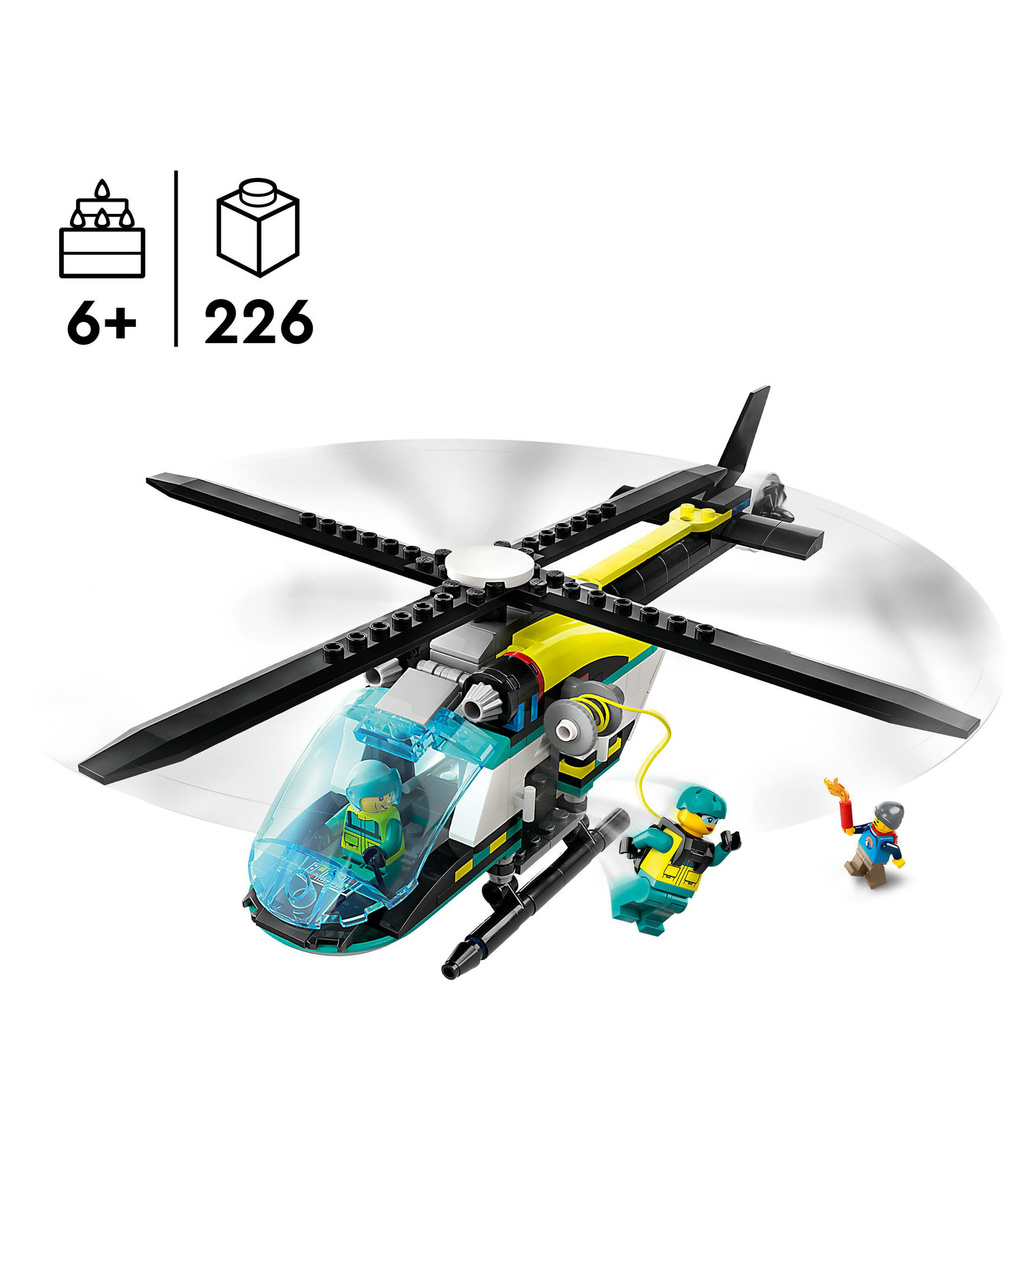 Helicóptero de rescate de emergencia - 60405 - lego city - LEGO